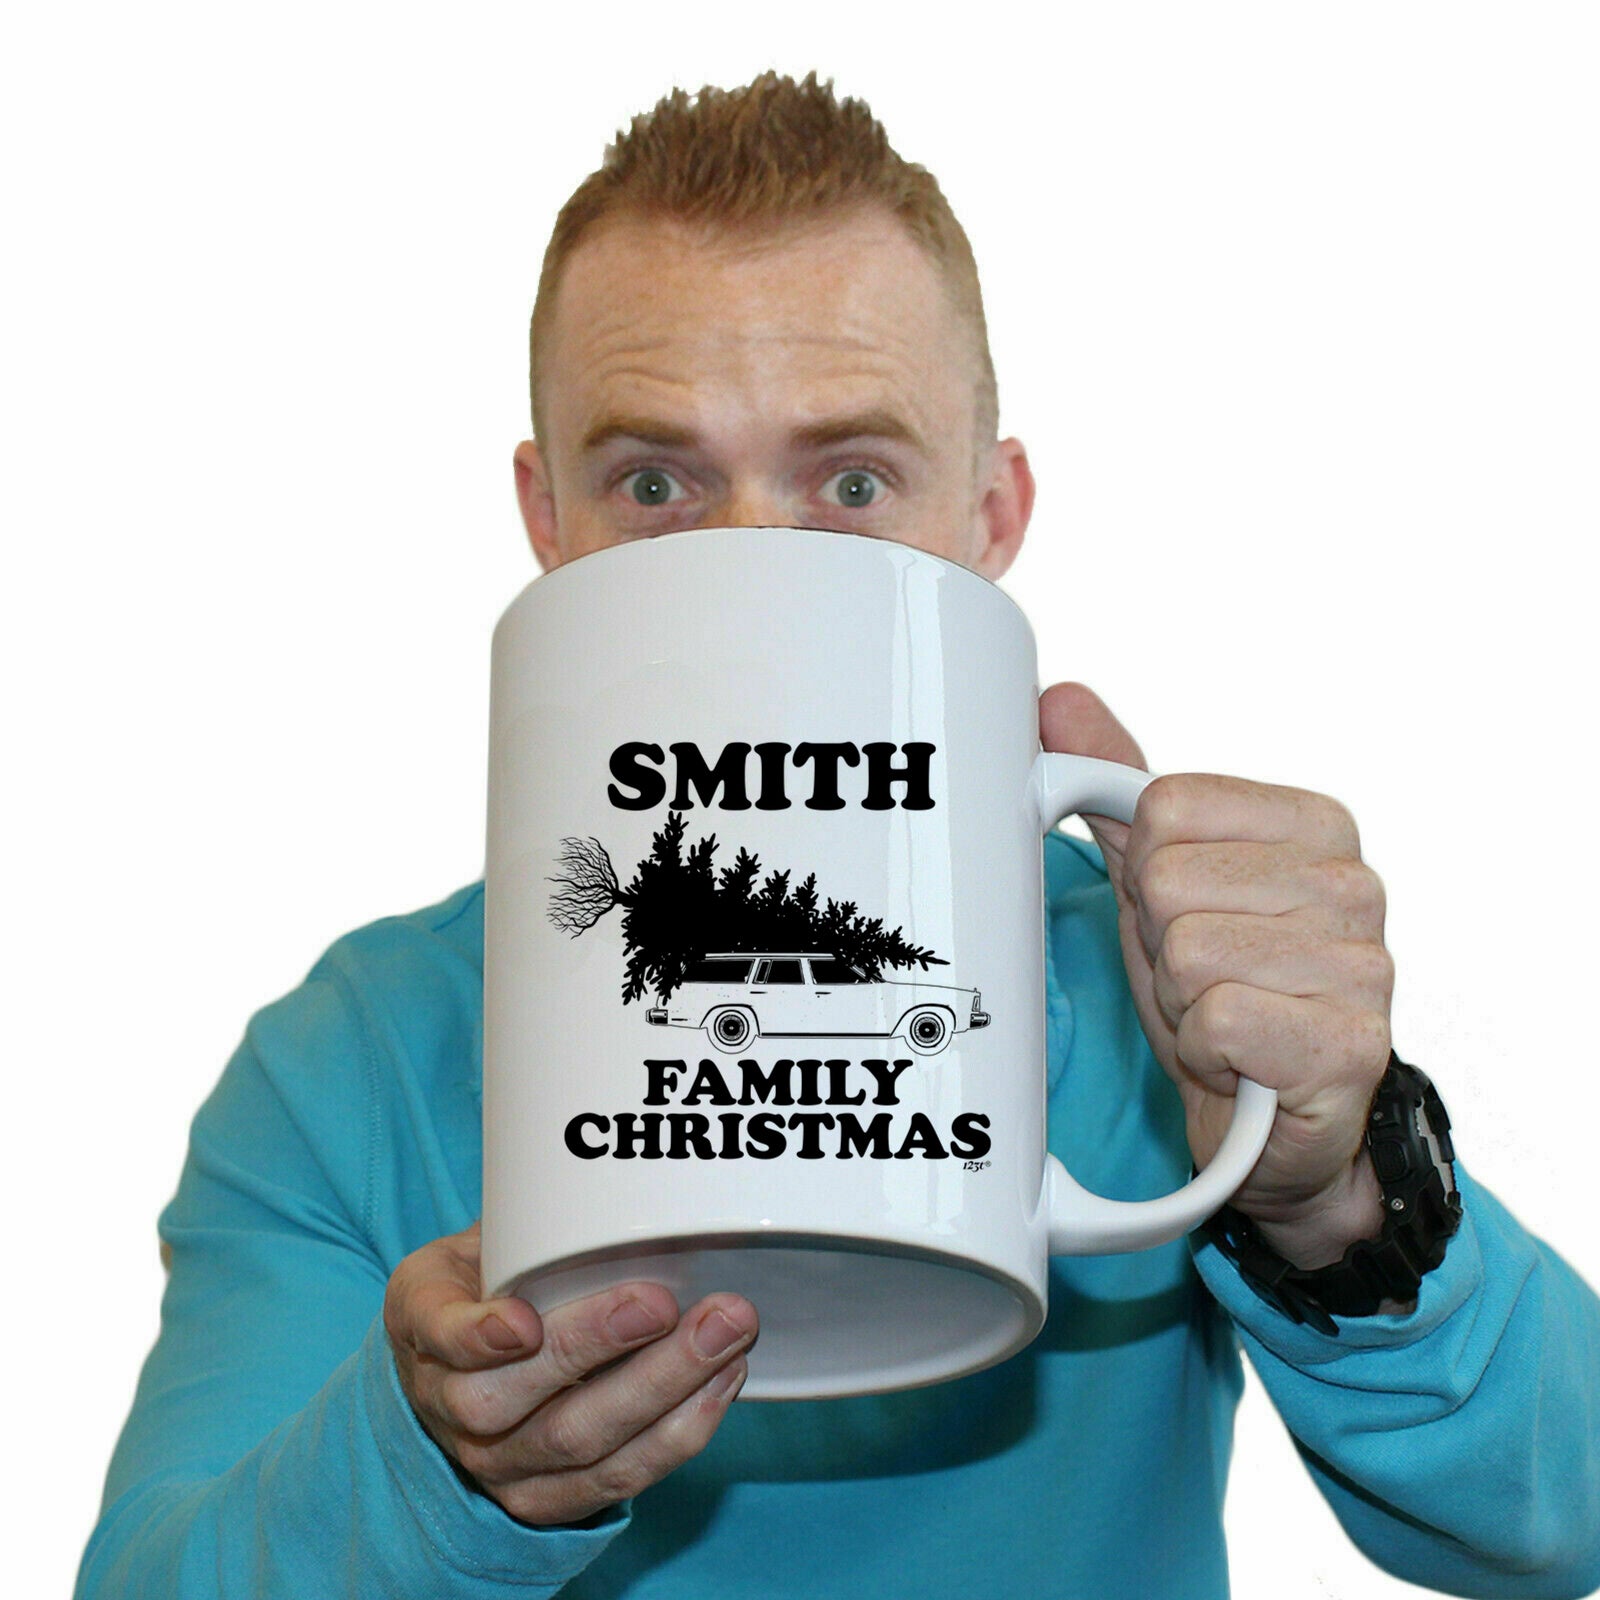 The Christmas Hub - Family Christmas Smith - Funny Giant 2 Litre Mug